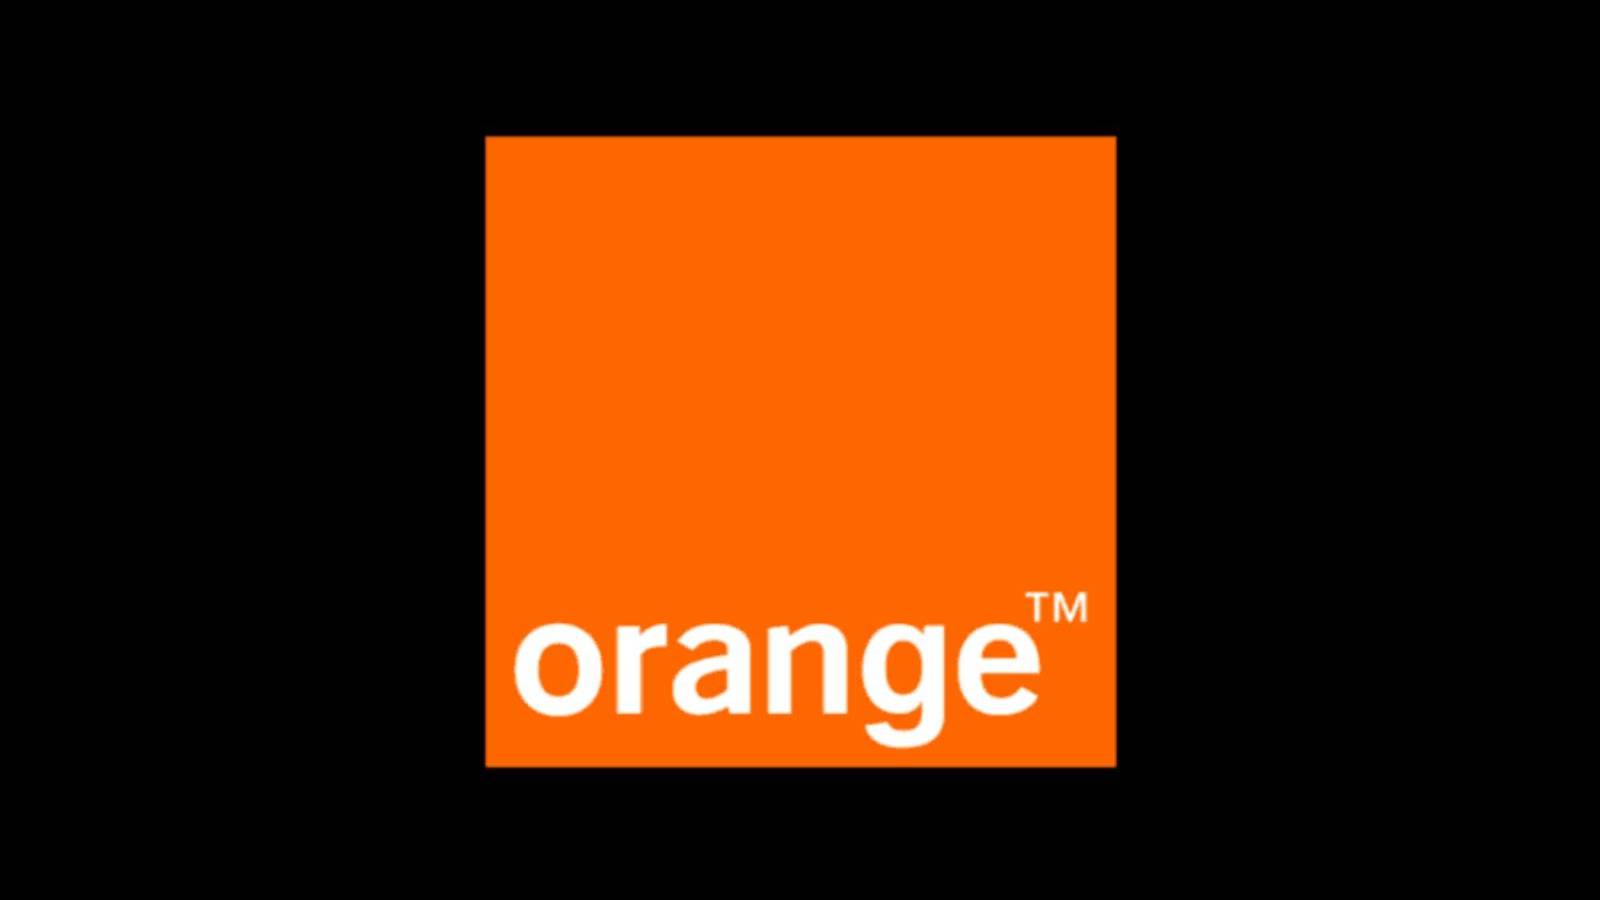 Orange Good News GRATIS Roemeense klanten